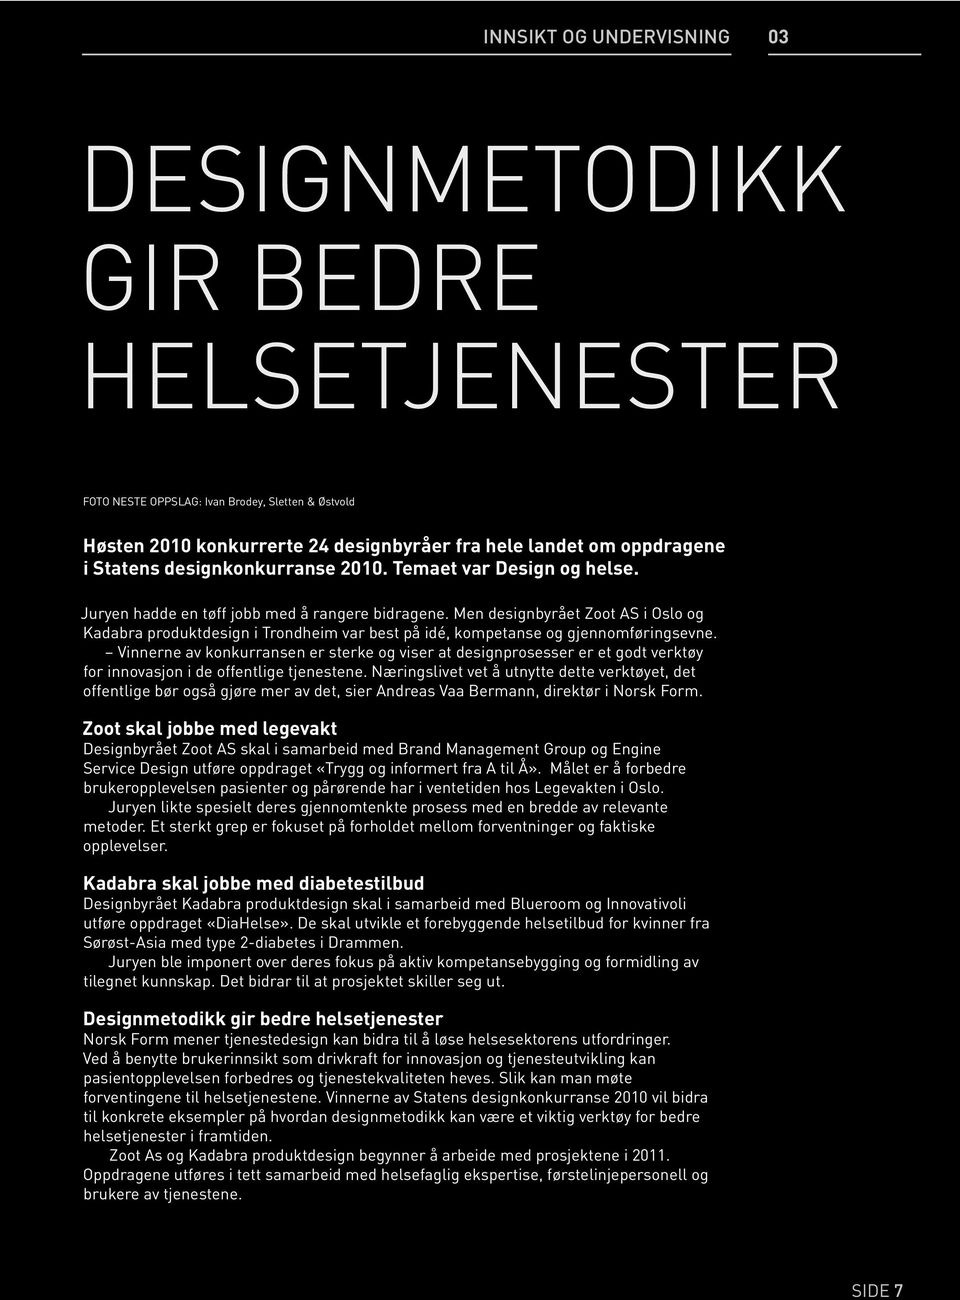 Men designbyrået Zoot AS i Oslo og Kadabra produktdesign i Trondheim var best på idé, kompetanse og gjennomføringsevne.